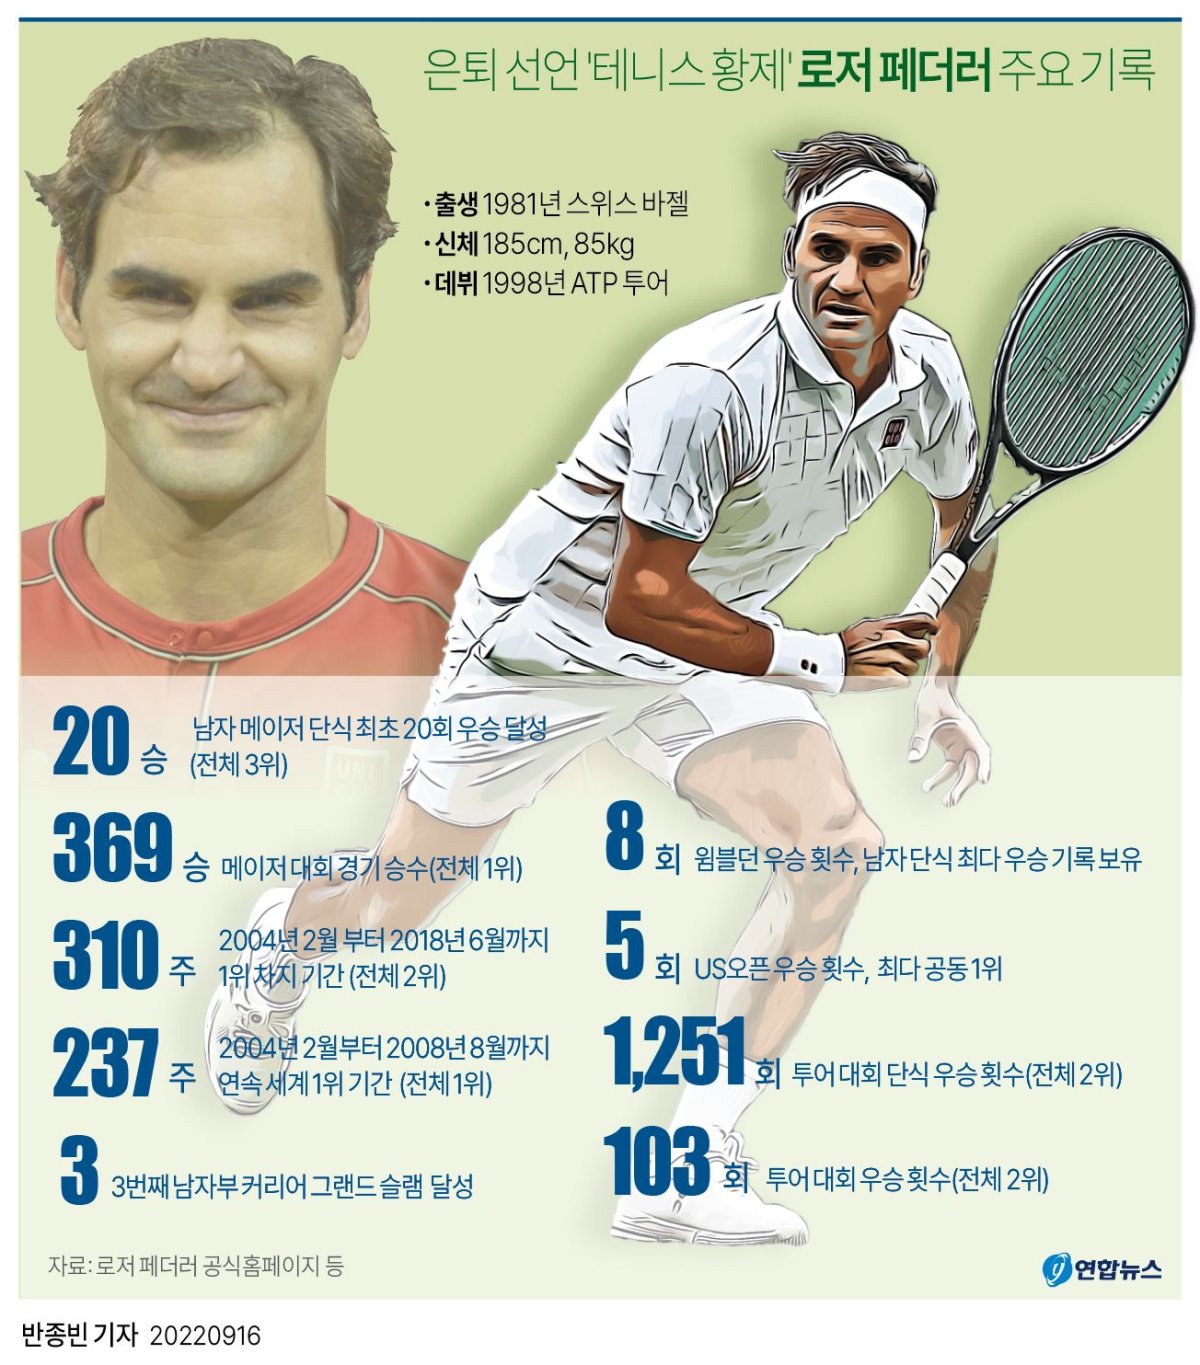 [그래픽] 은퇴 선언 '테니스 황제' 로저 페더러 주요 기록